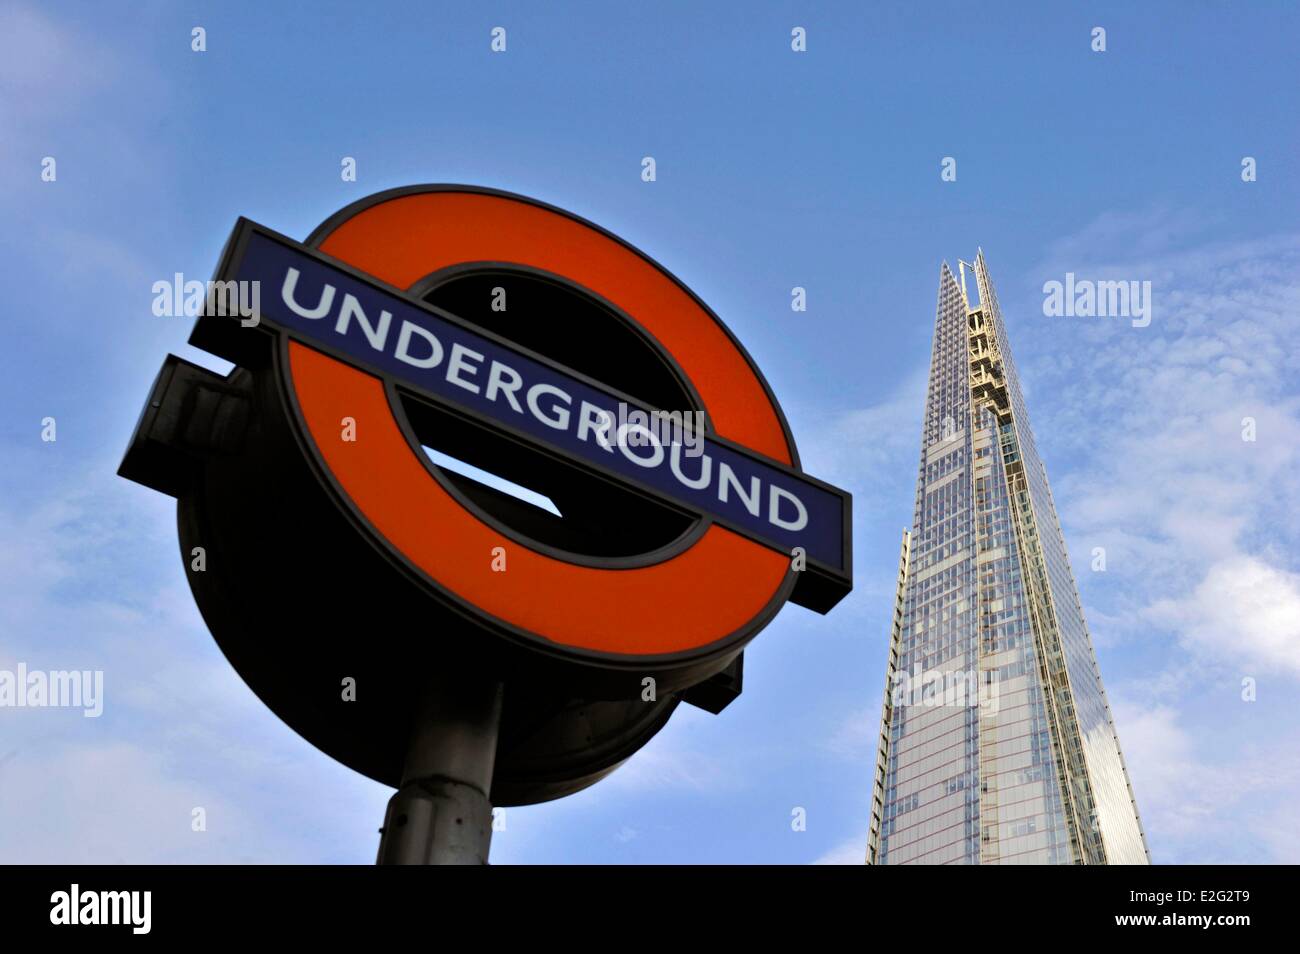 Regno Unito Londra metropolitana Southwark segno e la Shard London Bridge Tower dall'architetto Renzo Piano la torre più alto Foto Stock